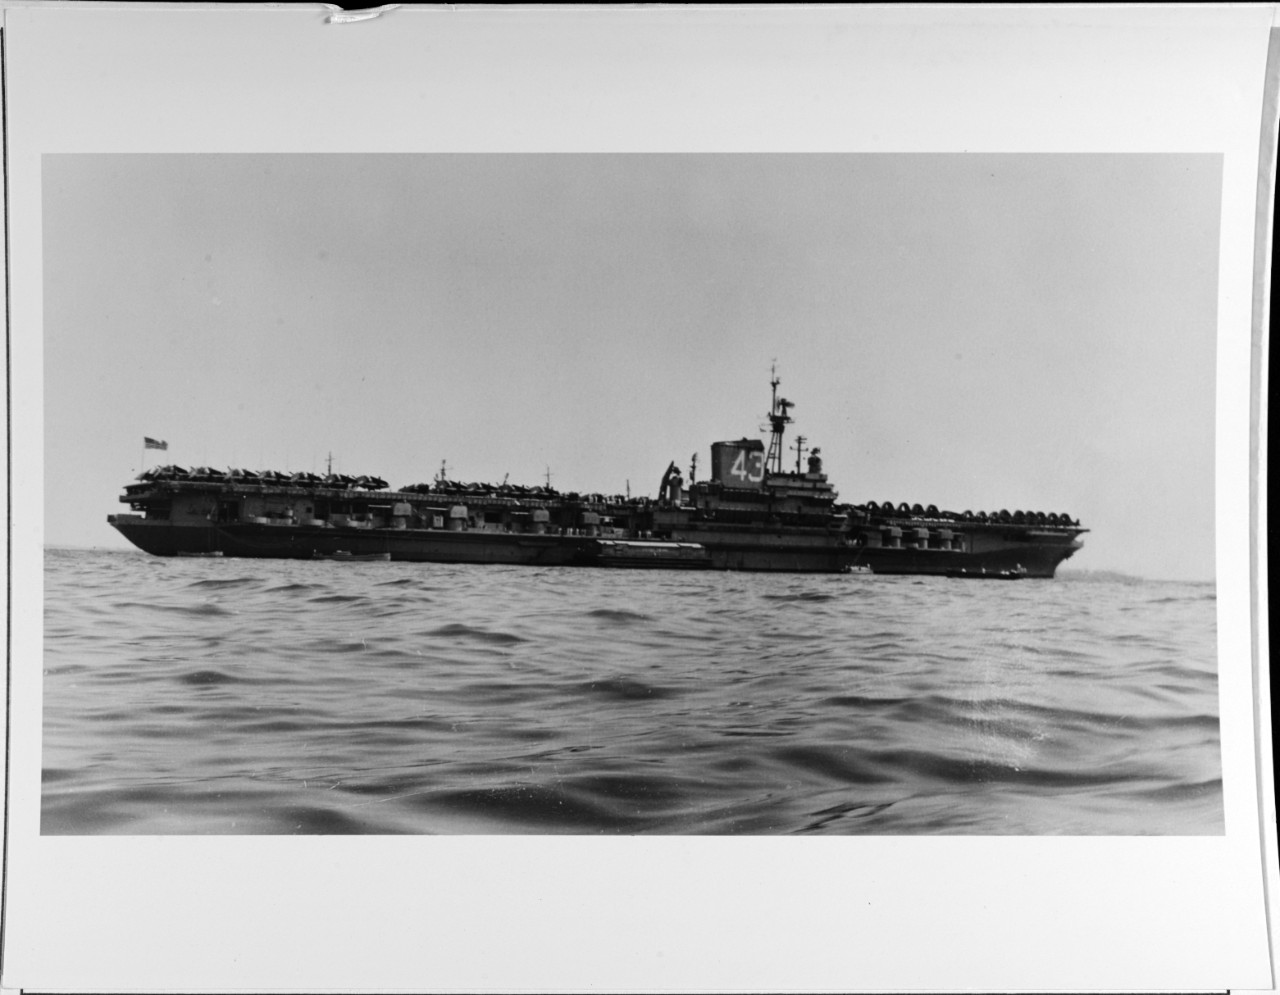 USS CORAL SEA (CVA-43)